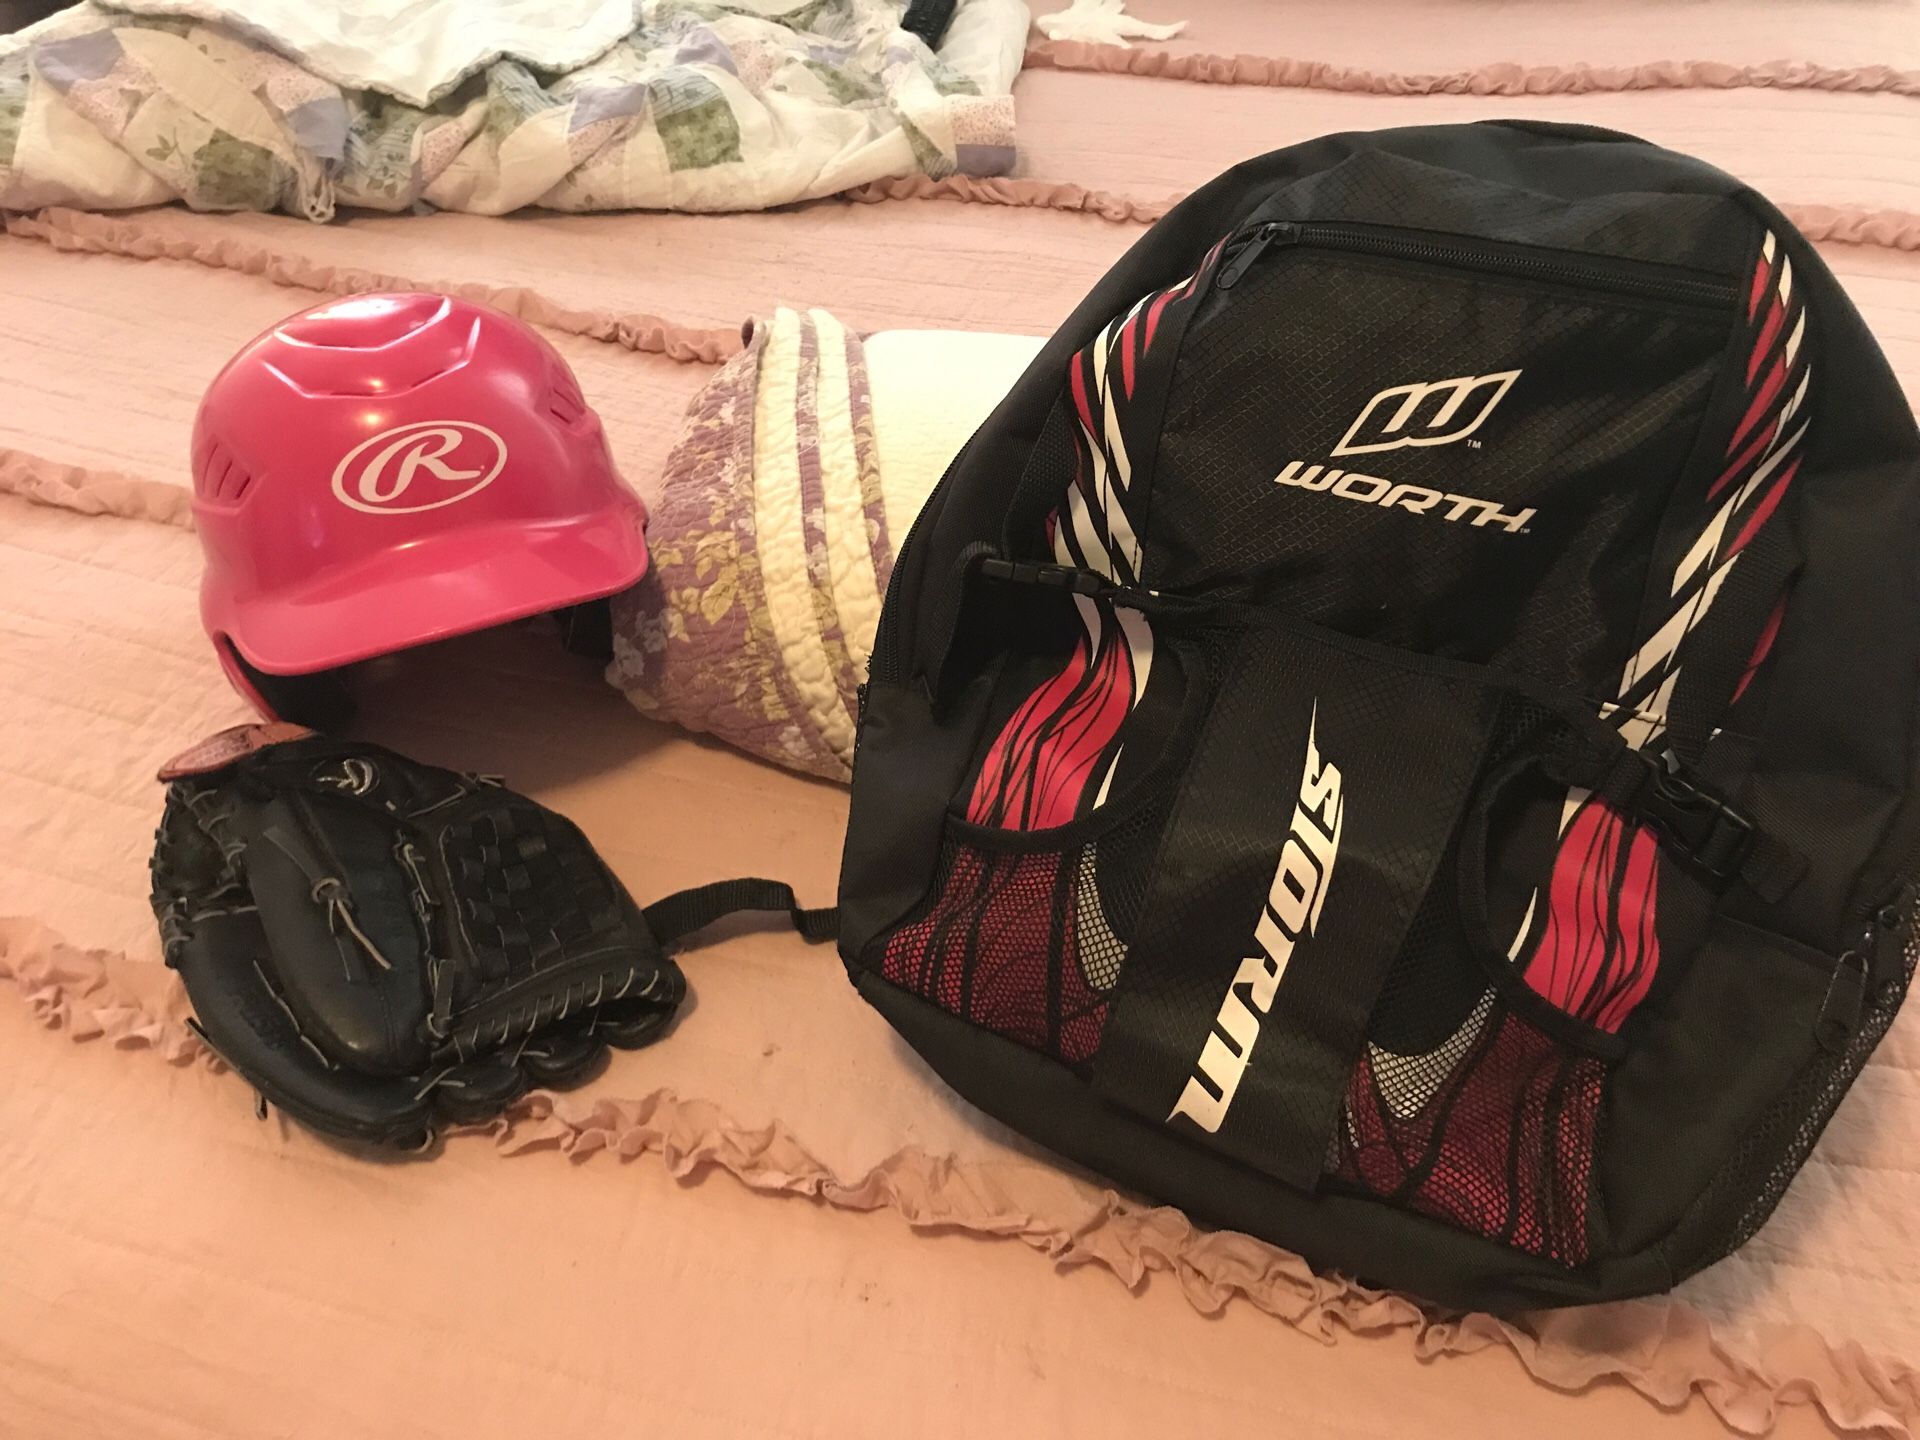 Baseball/softball ball kids back pack, helmet and glove